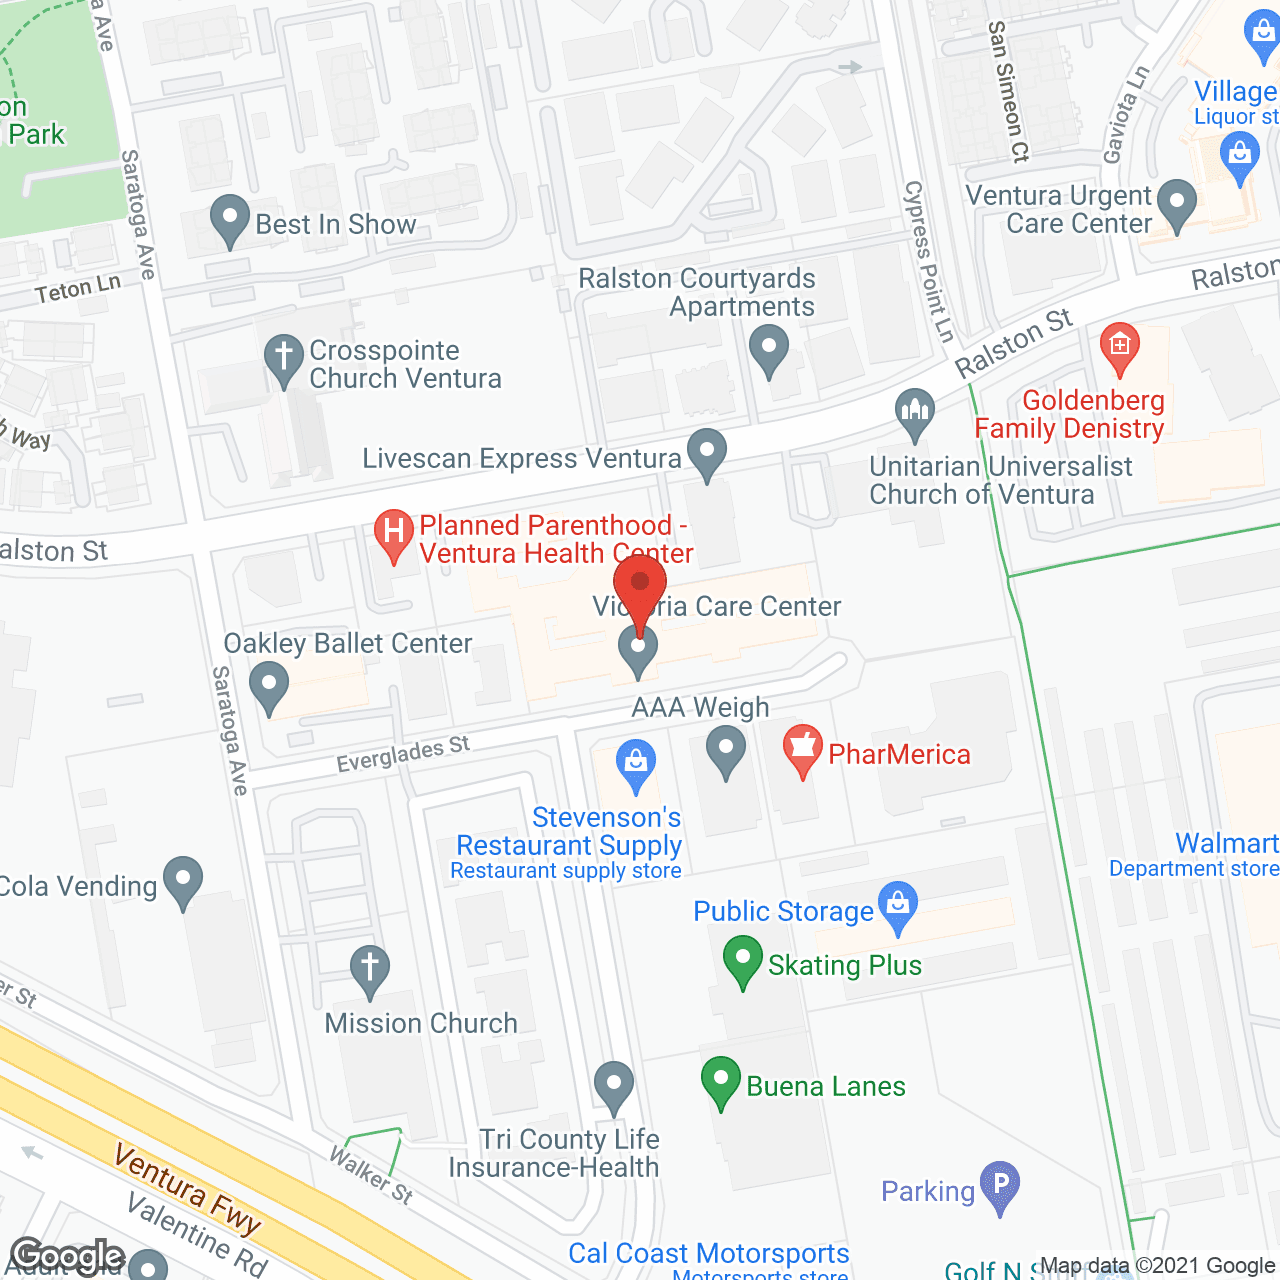 Victoria Care Center in google map